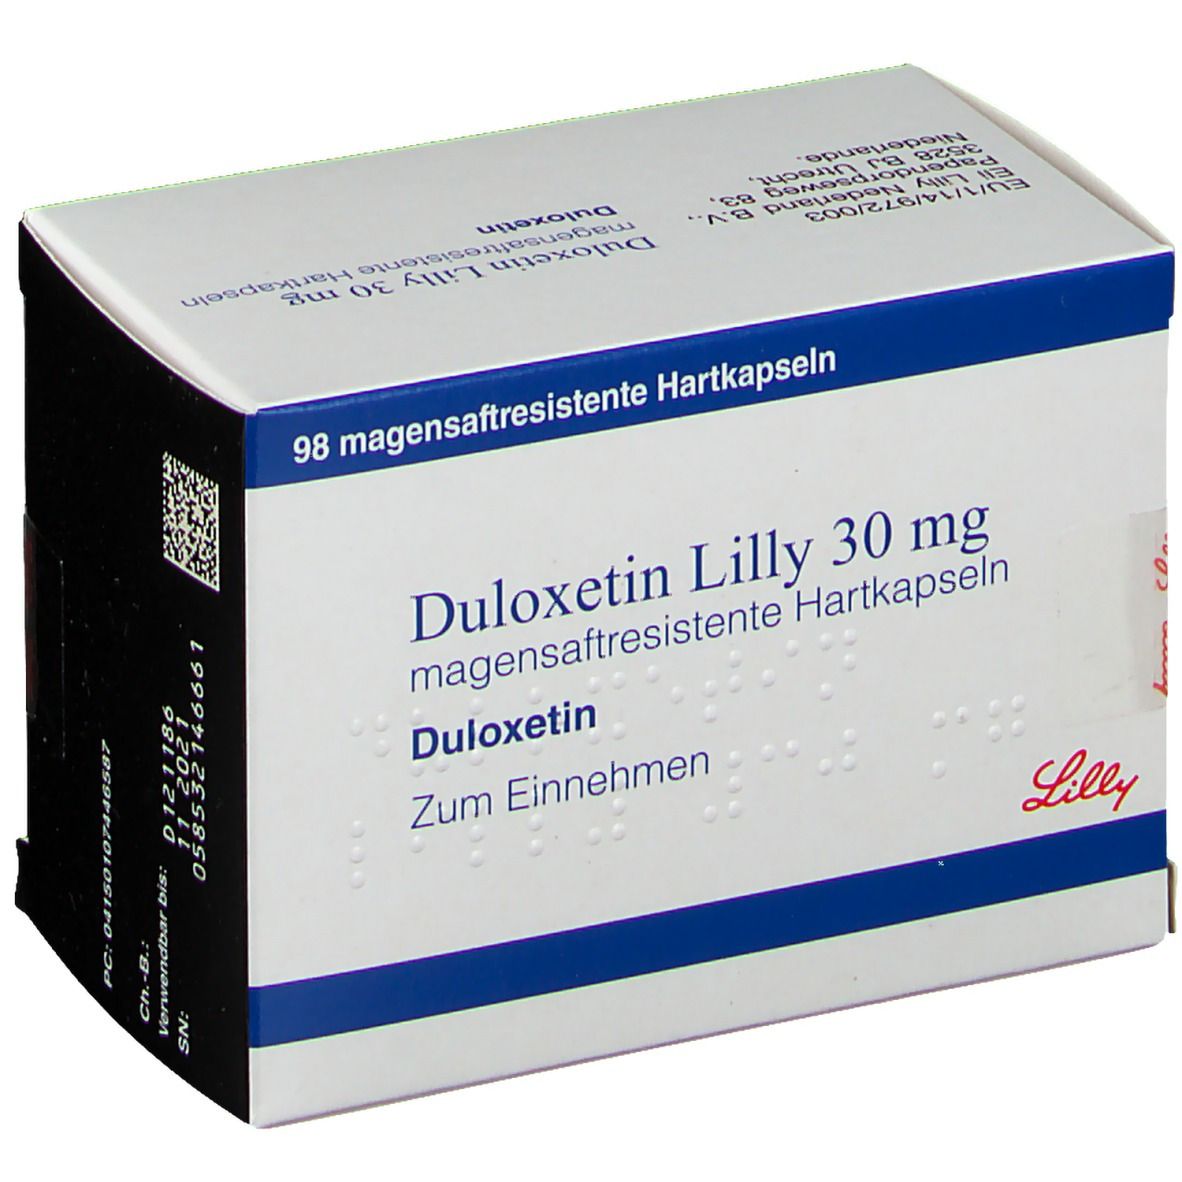 Duloxetin Lilly 30 mg